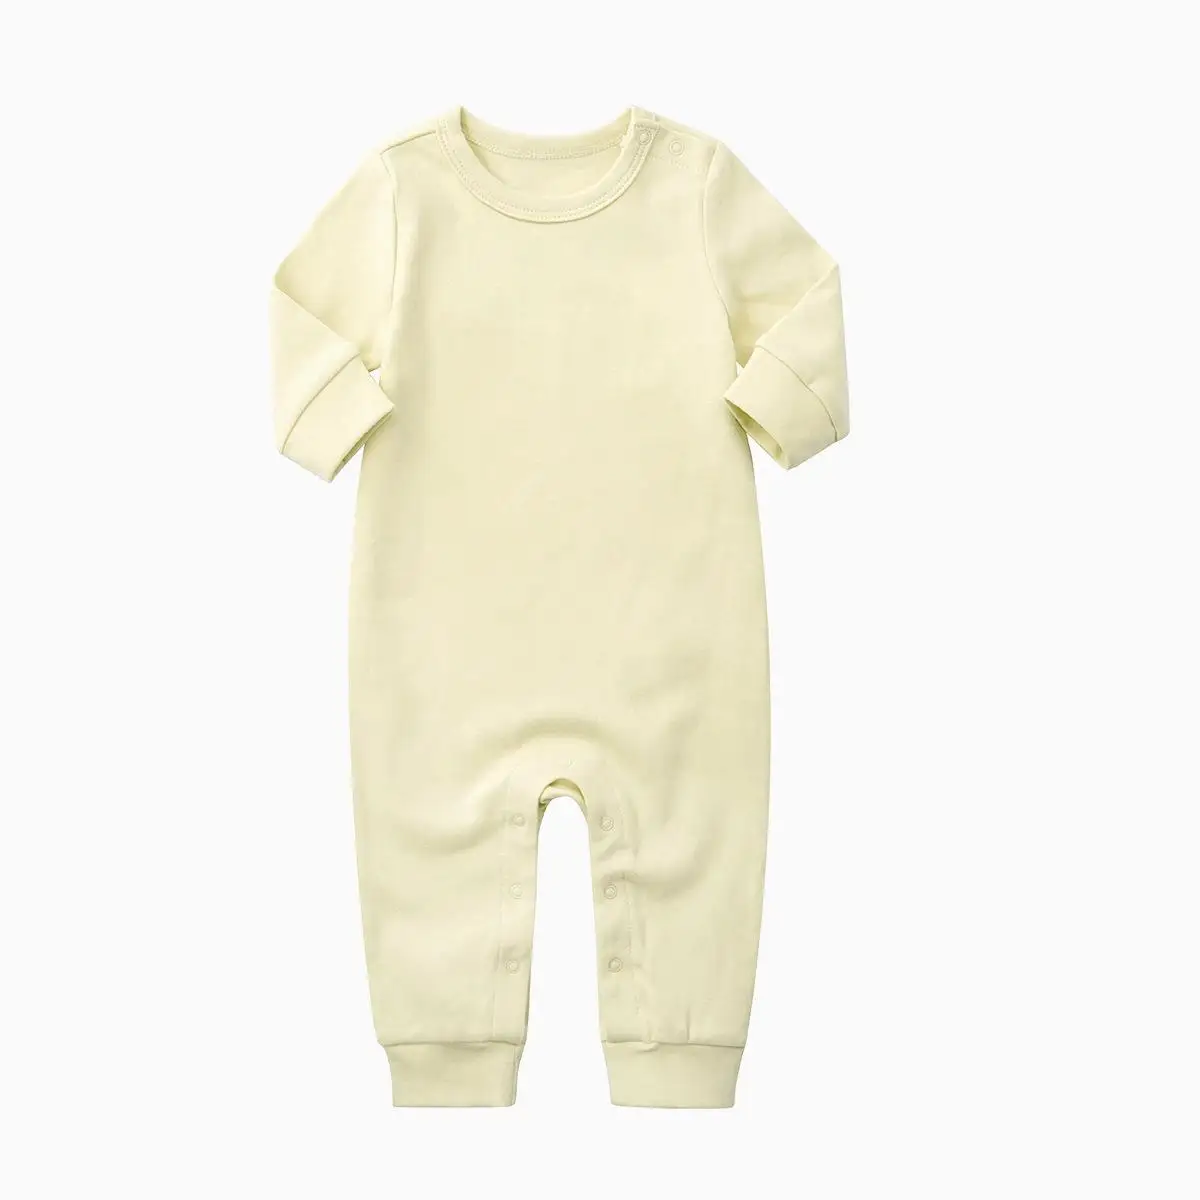 Orangemom 2018 babytøj af høj kvalitet, økologisk Bomuld-Romper Buksedragt med Lange Ærmer i bomuld baby pige tøj til nyfødte 4